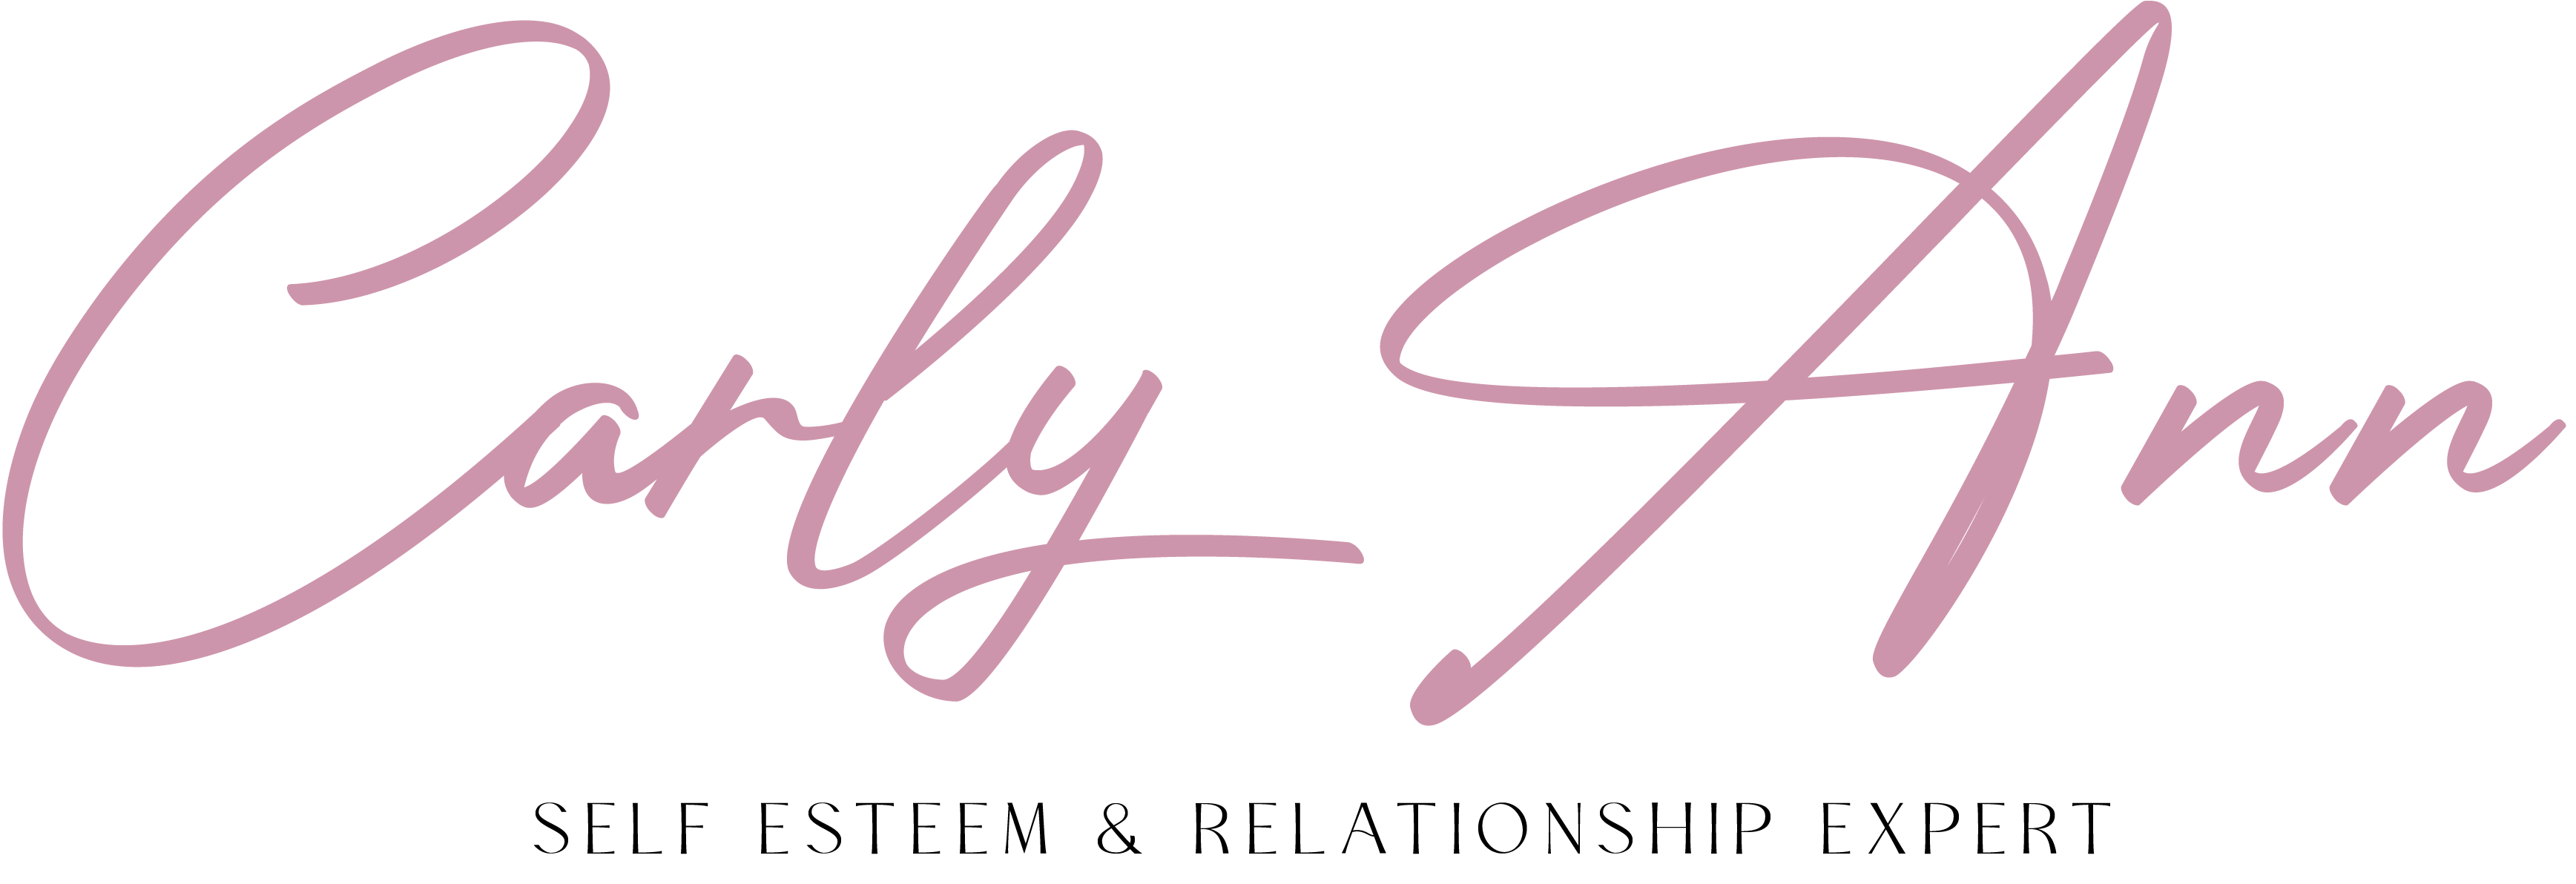 Carly Ann logo